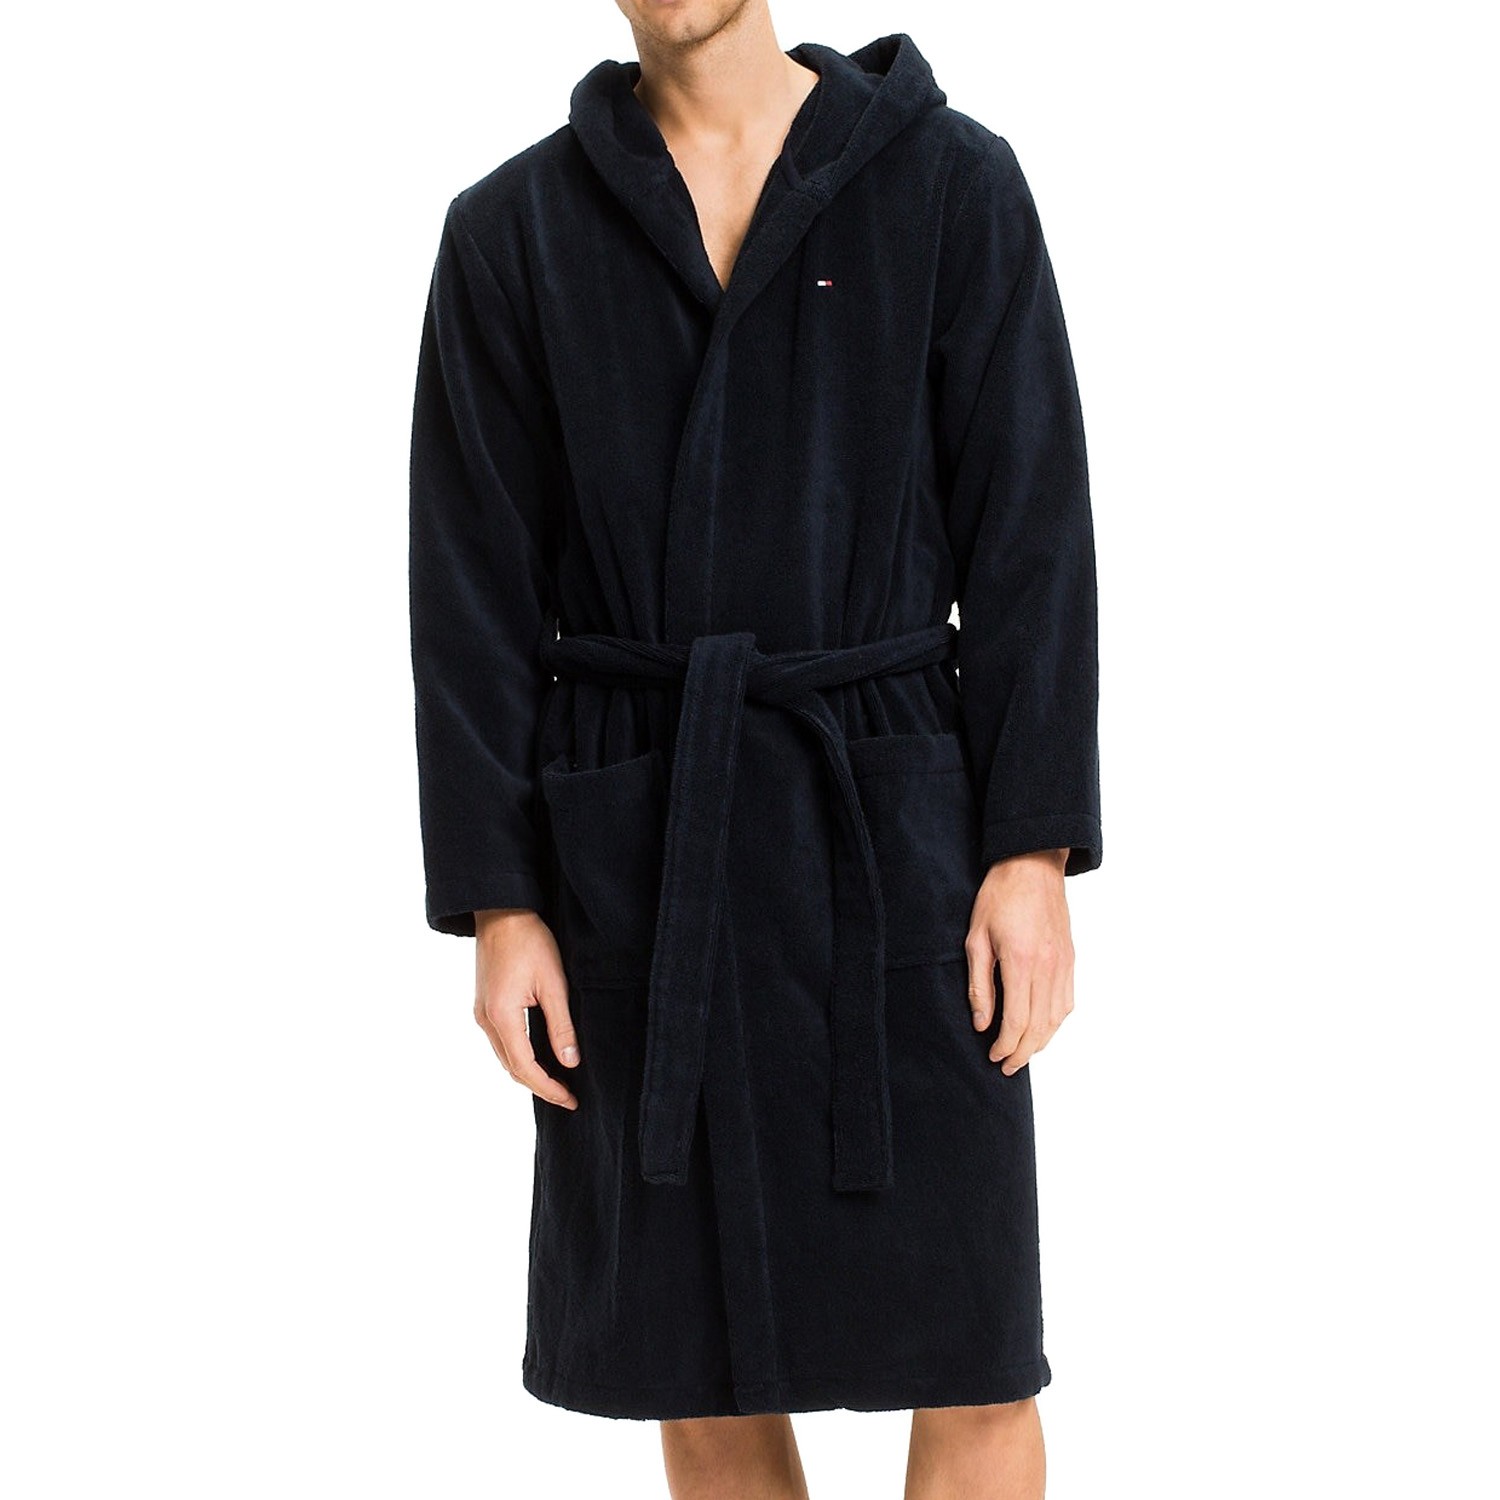 hilfiger bathrobe